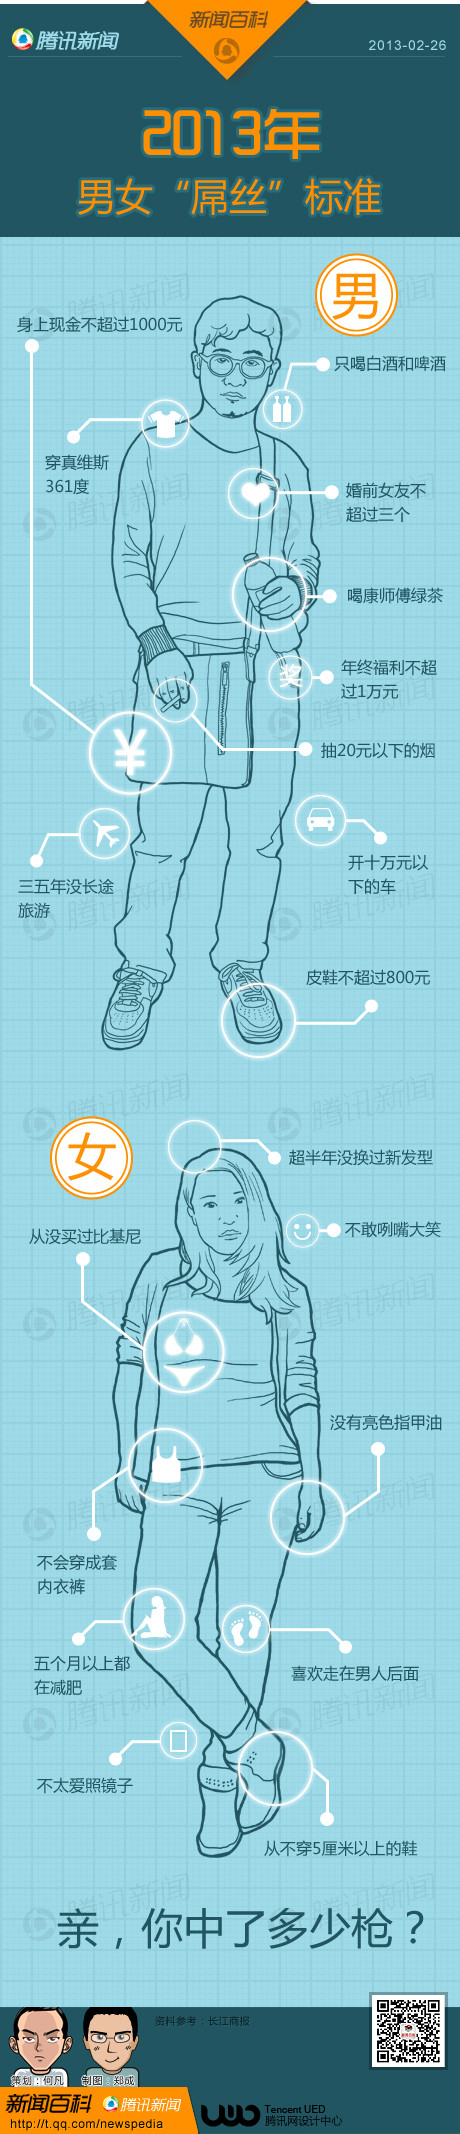 2013年中国男女“屌丝国标”出炉 看看自己中了几枪(图)